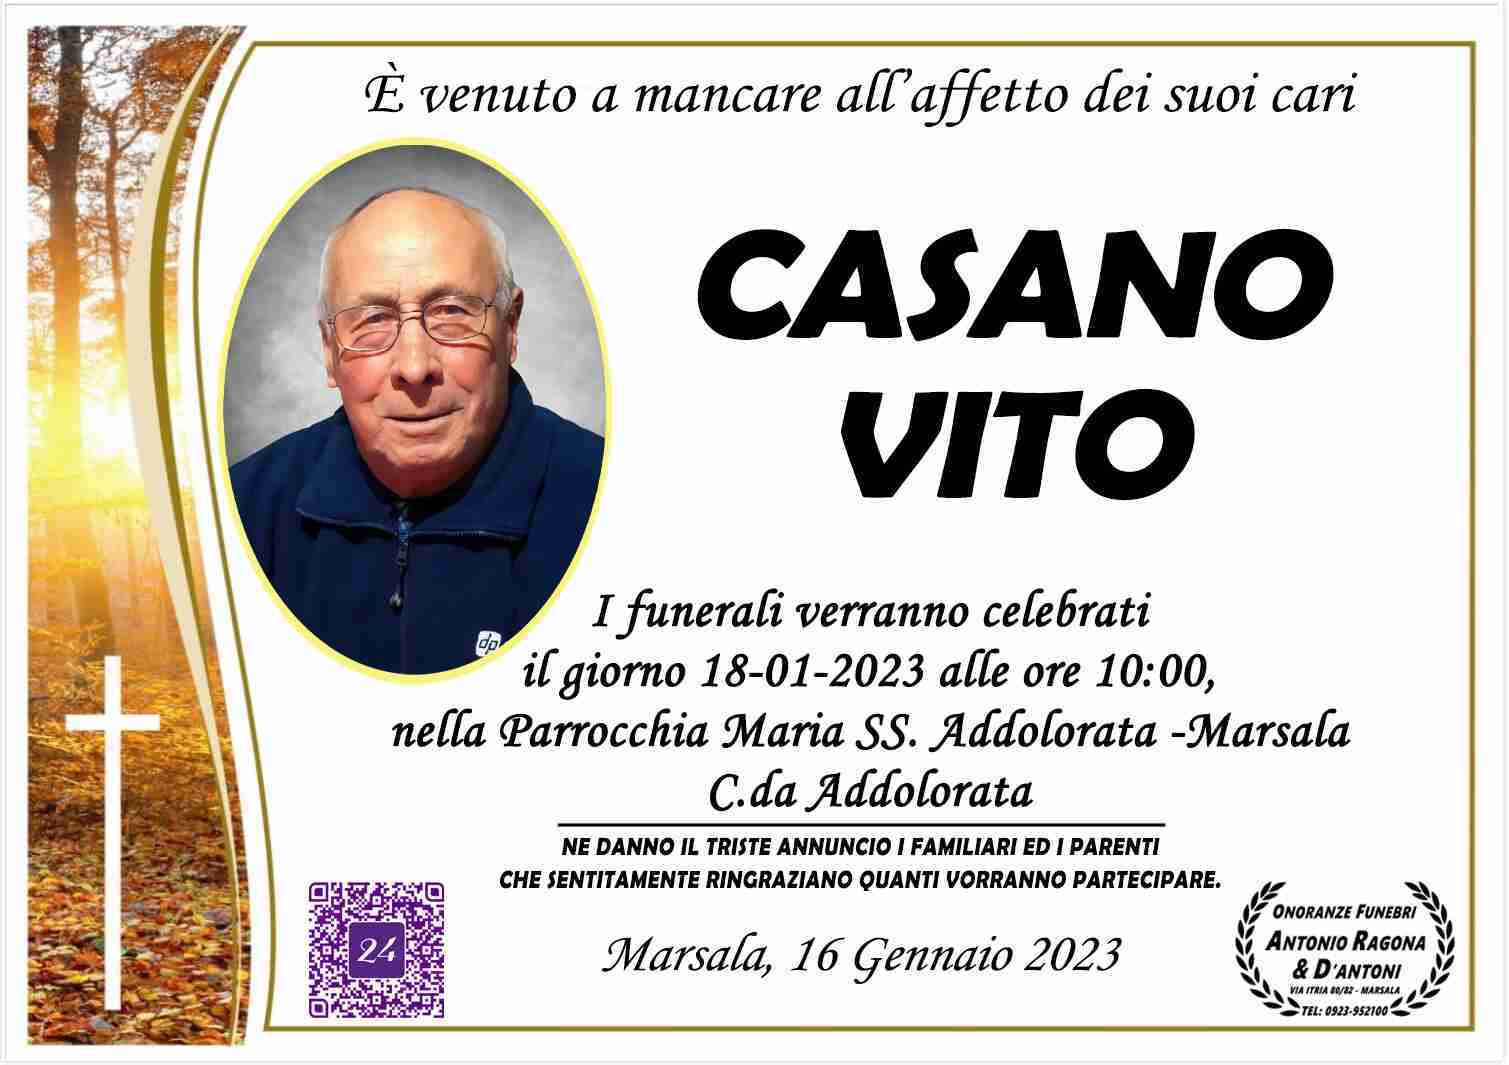 Vito Casano